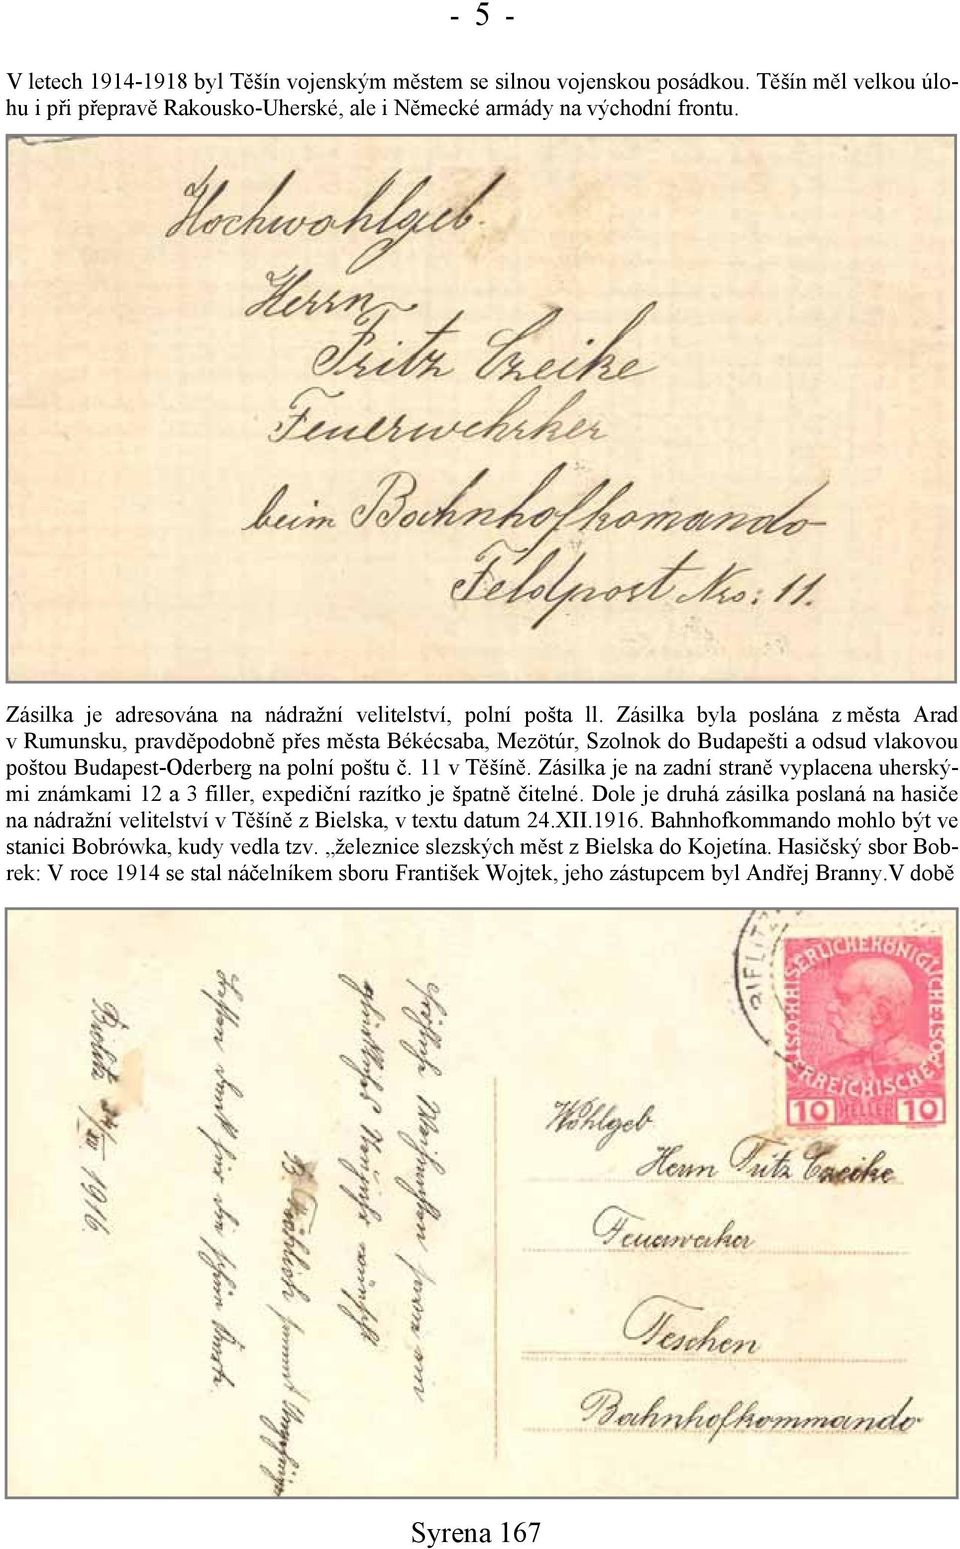 Zásilka byla poslána z města Arad v Rumunsku, pravděpodobně přes města Békécsaba, Mezötúr, Szolnok do Budapešti a odsud vlakovou poštou Budapest-Oderberg na polní poštu č. 11 v Těšíně.